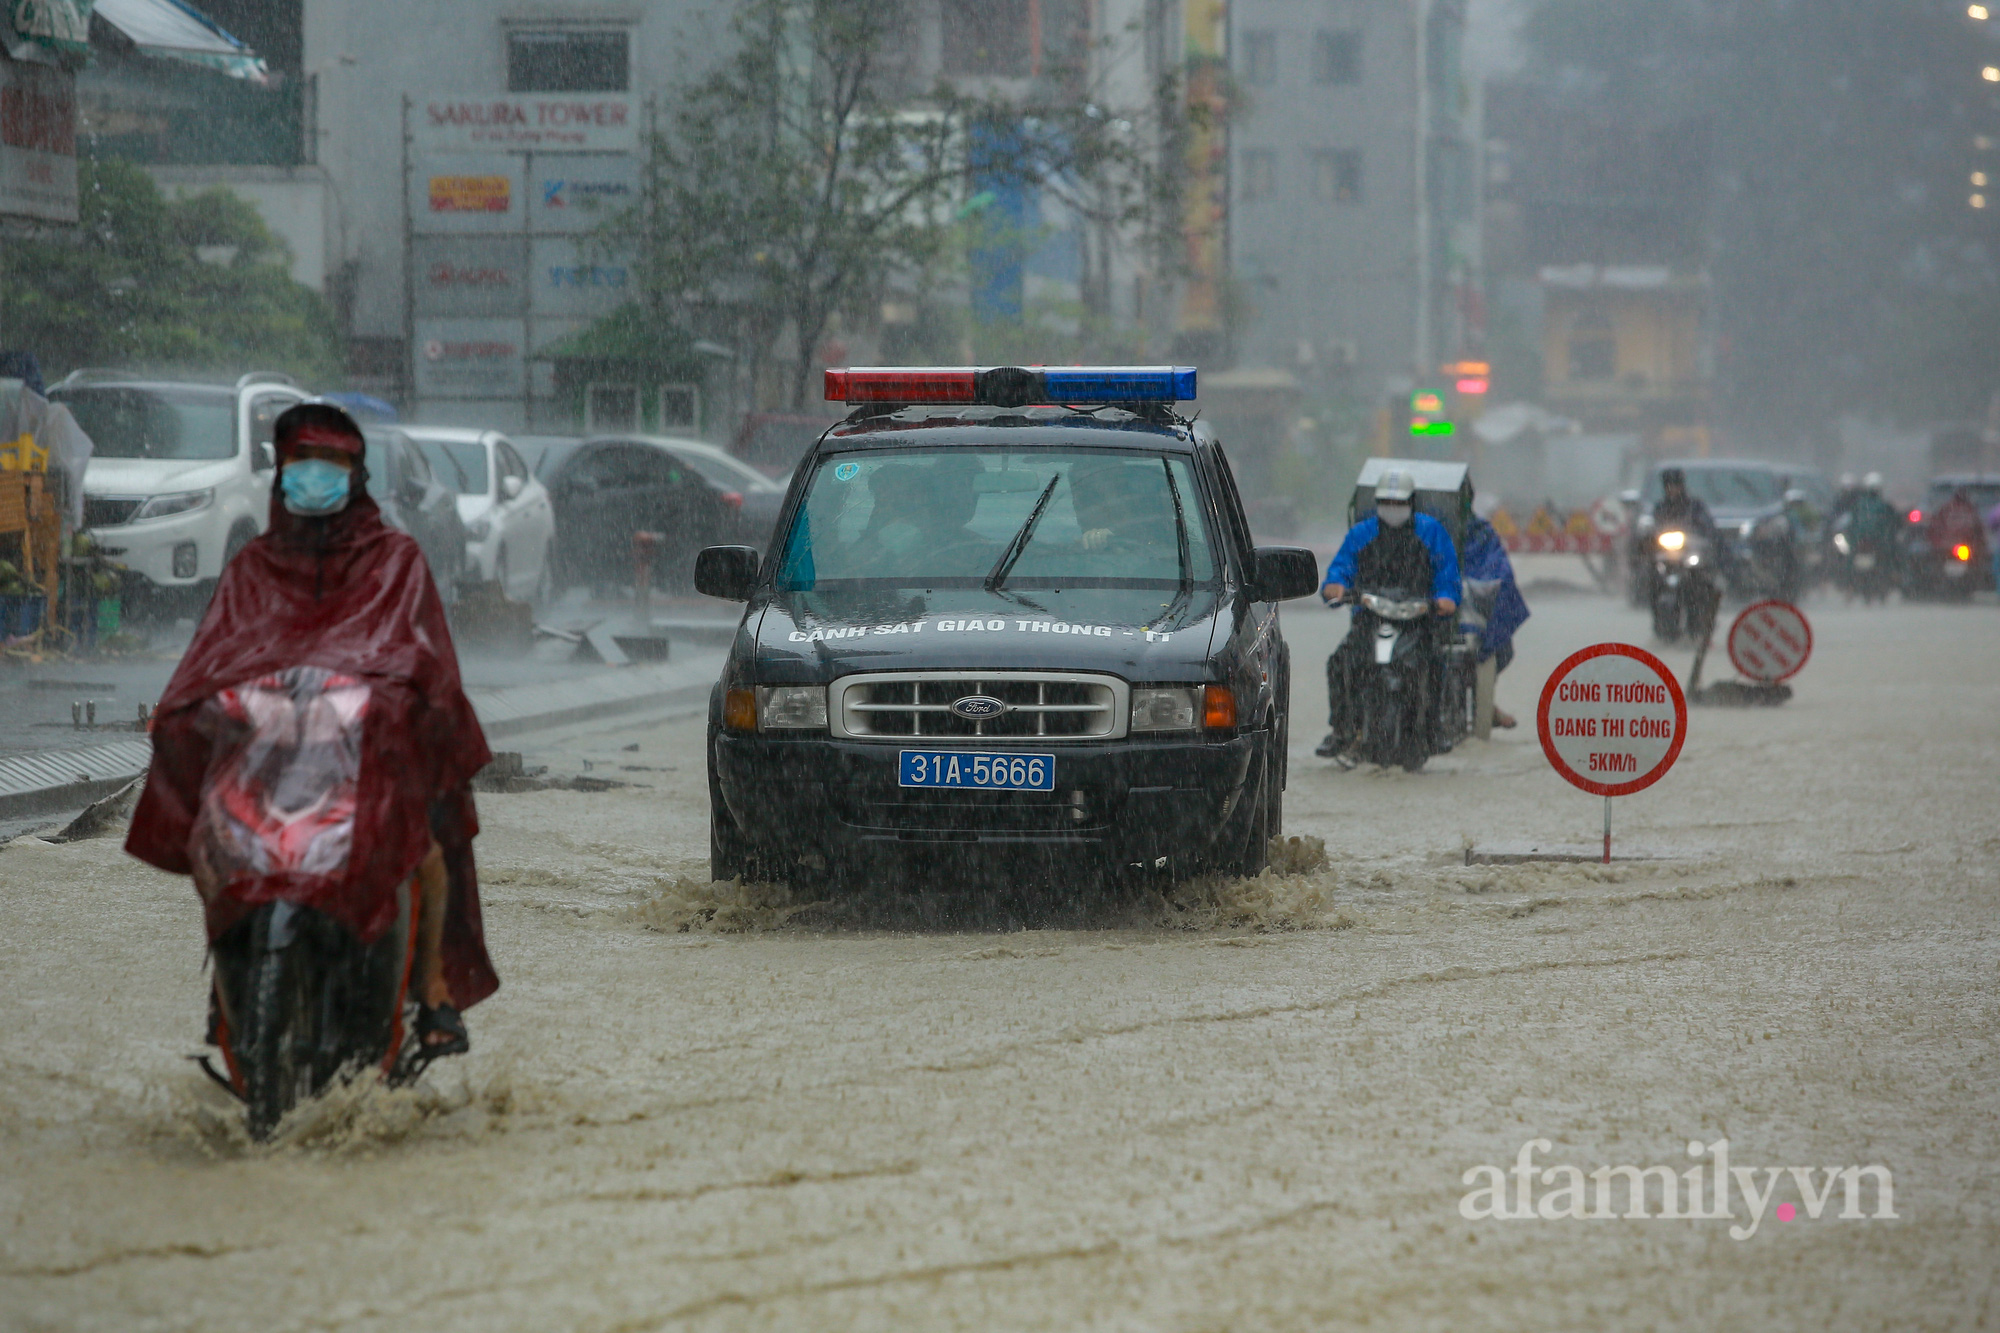 Đường phố ùn tắc, người Hà Nội vật lộn đi làm trong cơn mưa tầm tã - Ảnh 18.